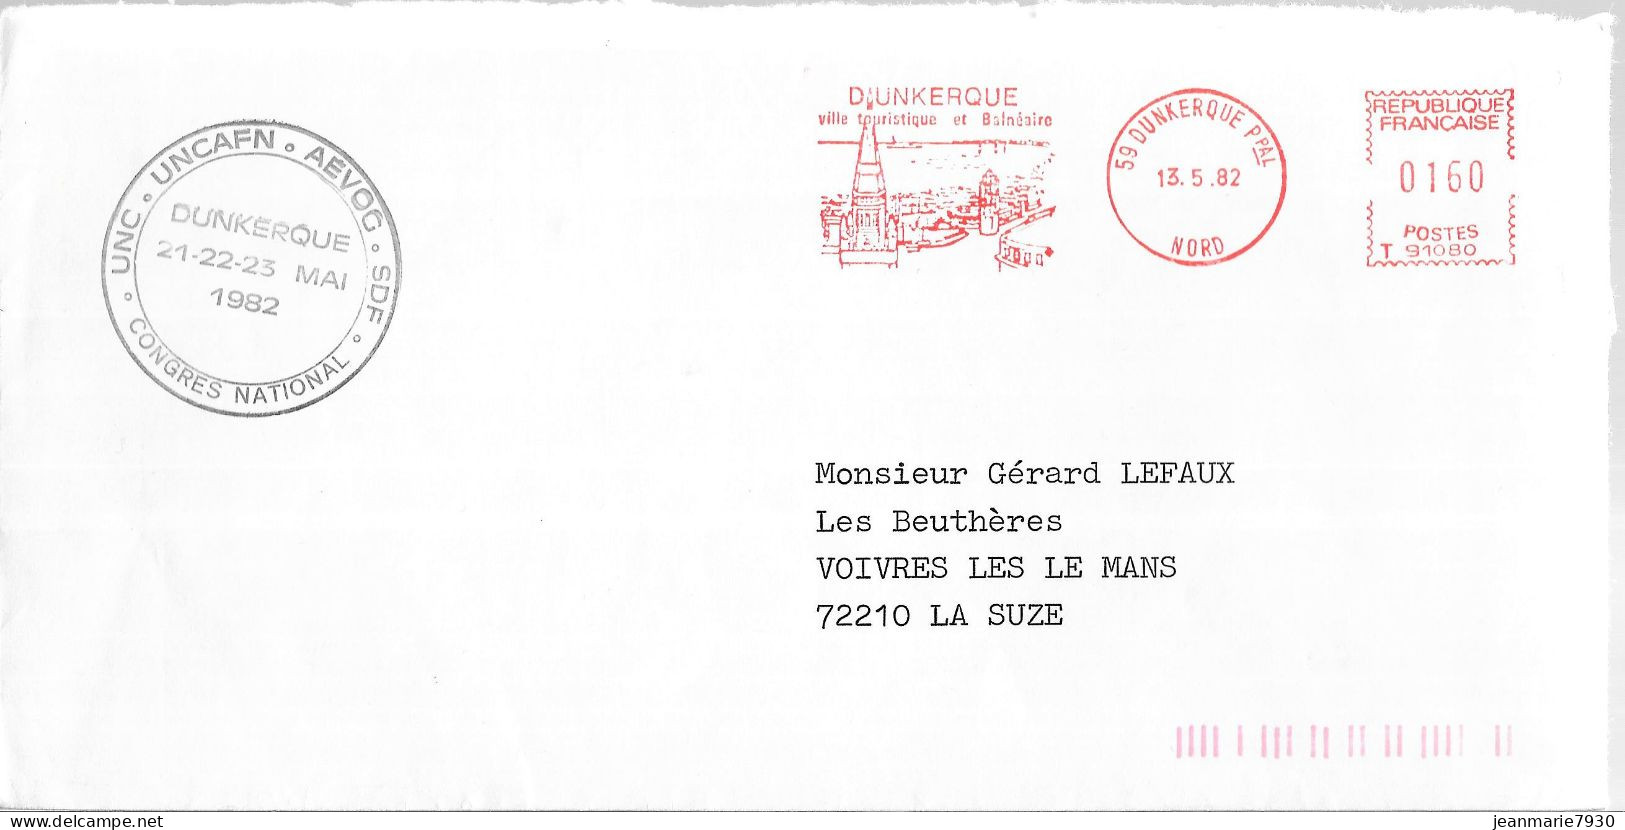 P290 - LETTRE UNCAFN DE DUNKERQUE DU 13/05/82 - FLAMME - Briefe U. Dokumente